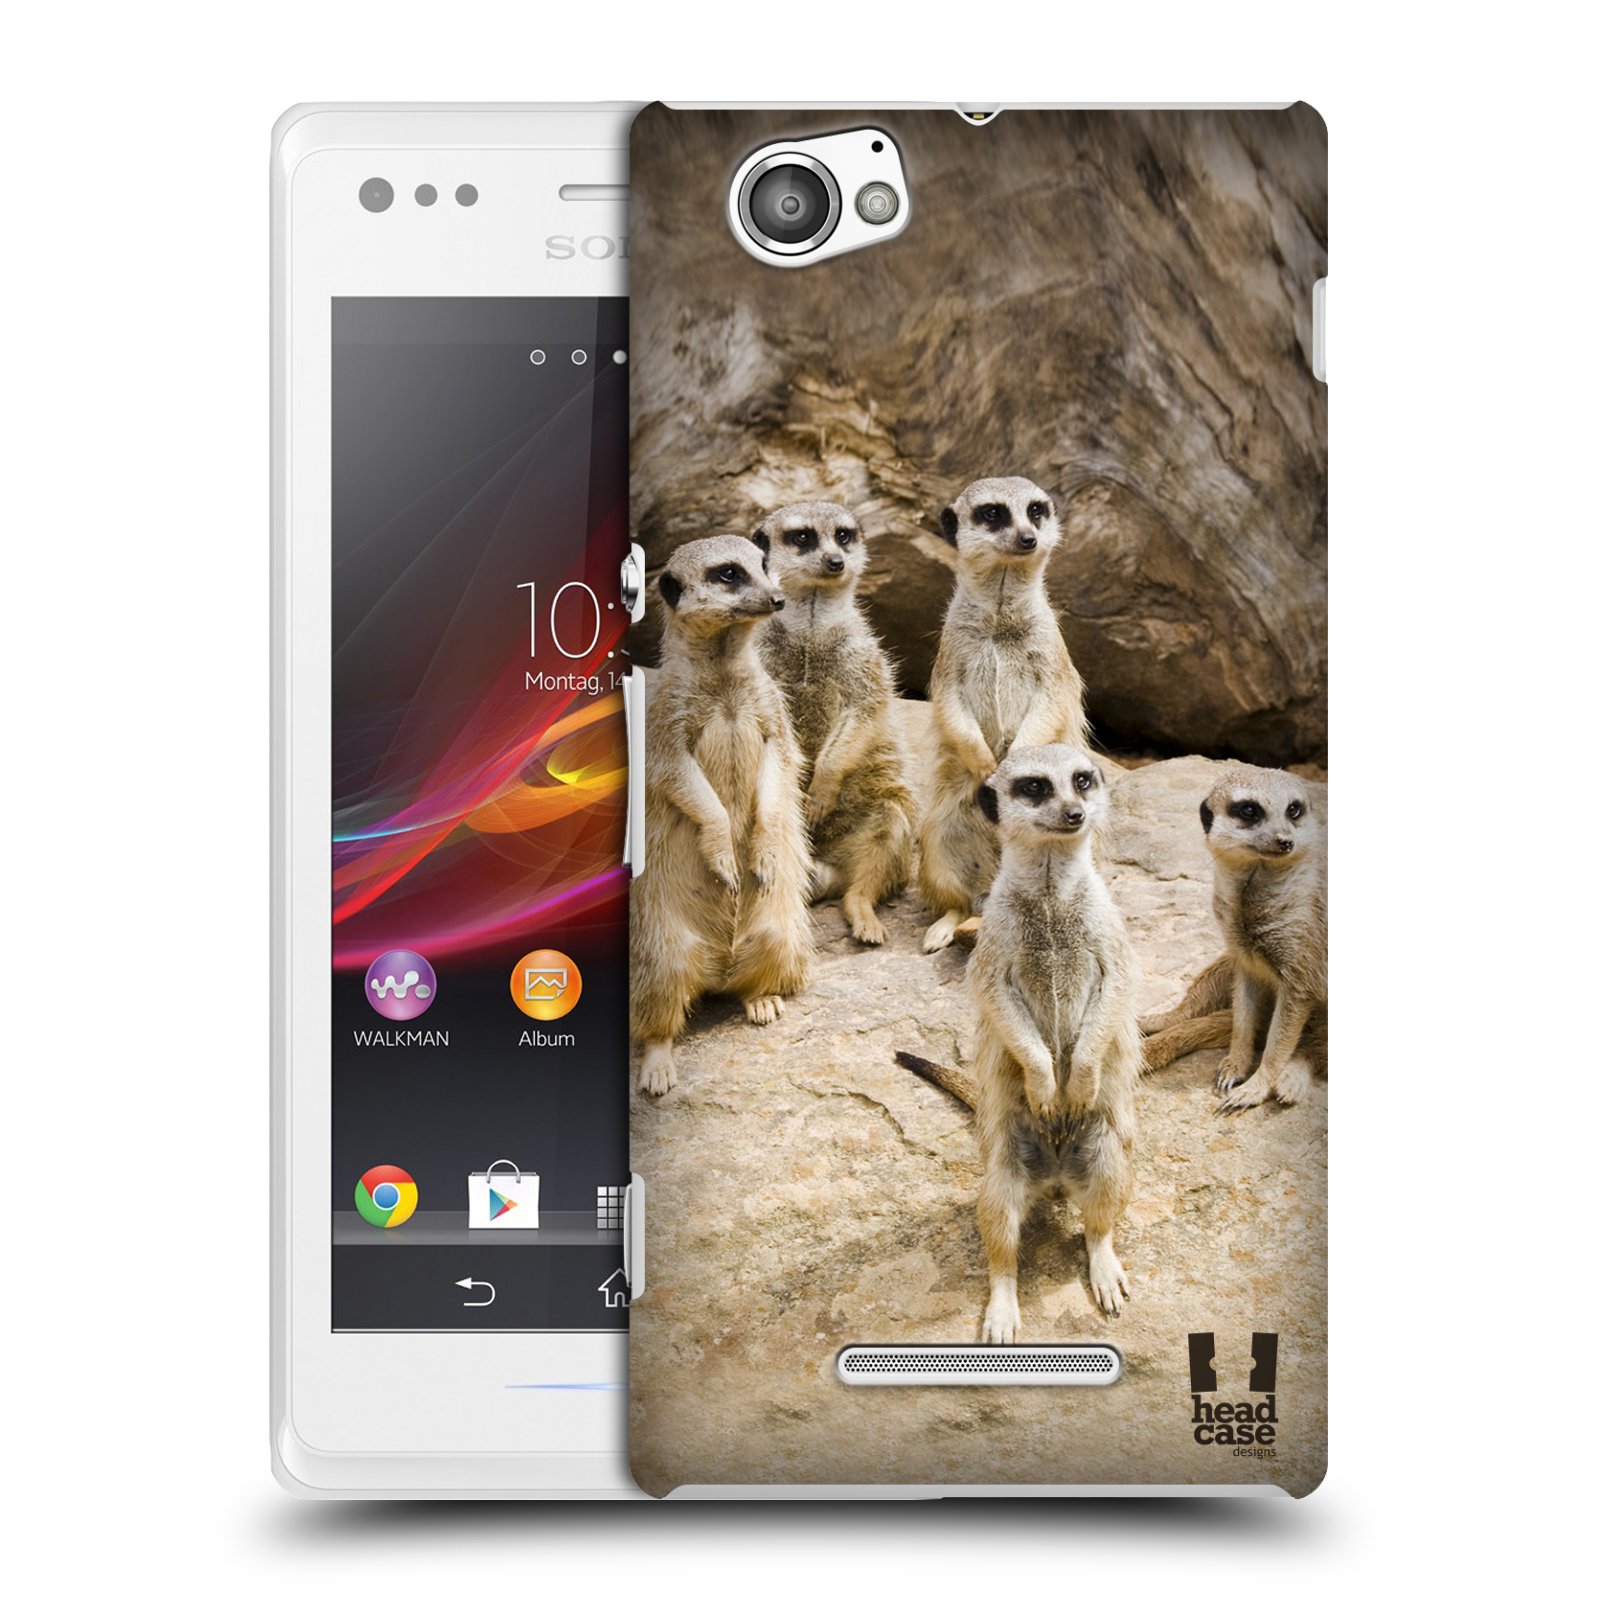 HEAD CASE plastový obal na mobil Sony Xperia M vzor Divočina, Divoký život a zvířata foto SURIKATA